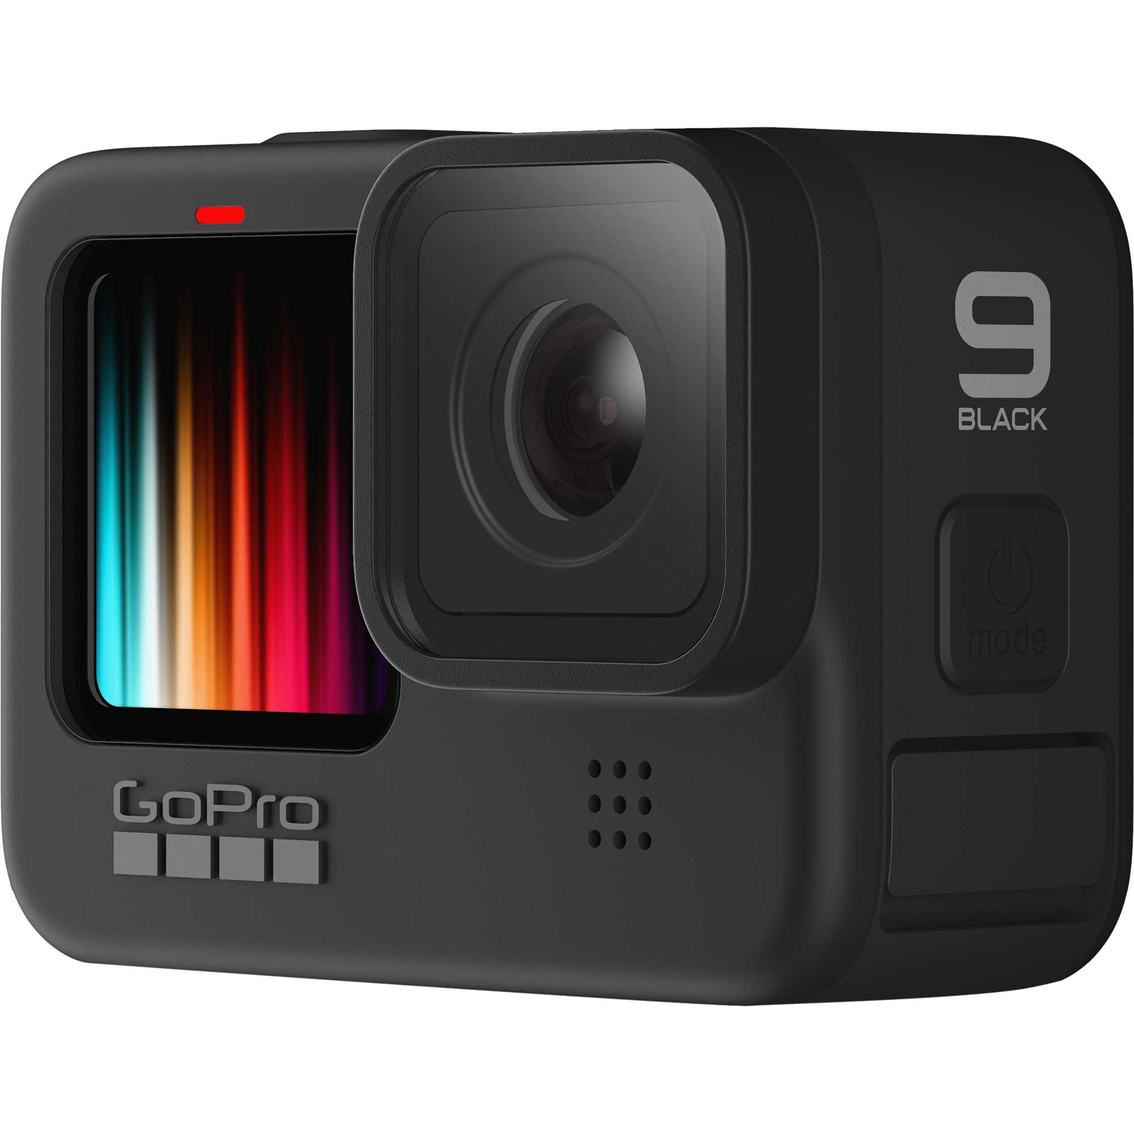 GoPro Hero9 Black Camera - Image 2 of 4